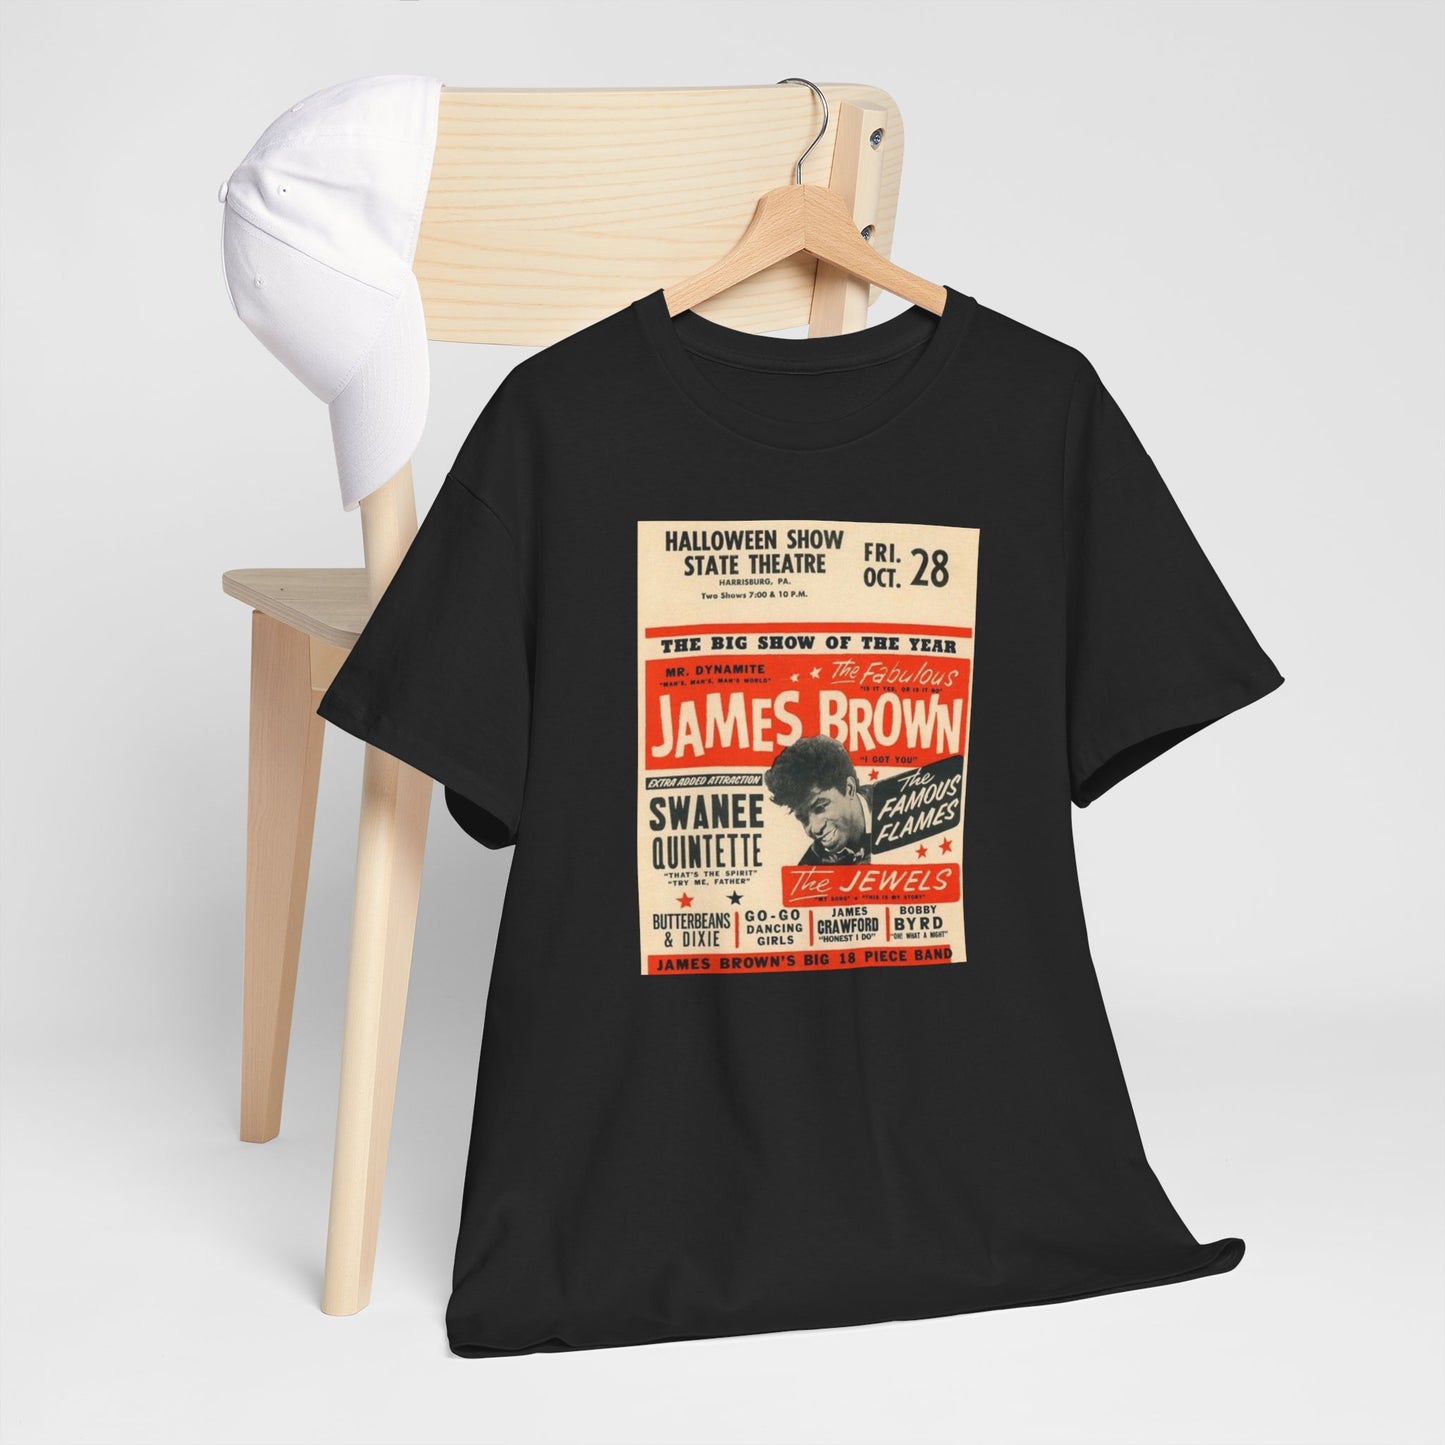 Concert Poster Tee #139: James Brown